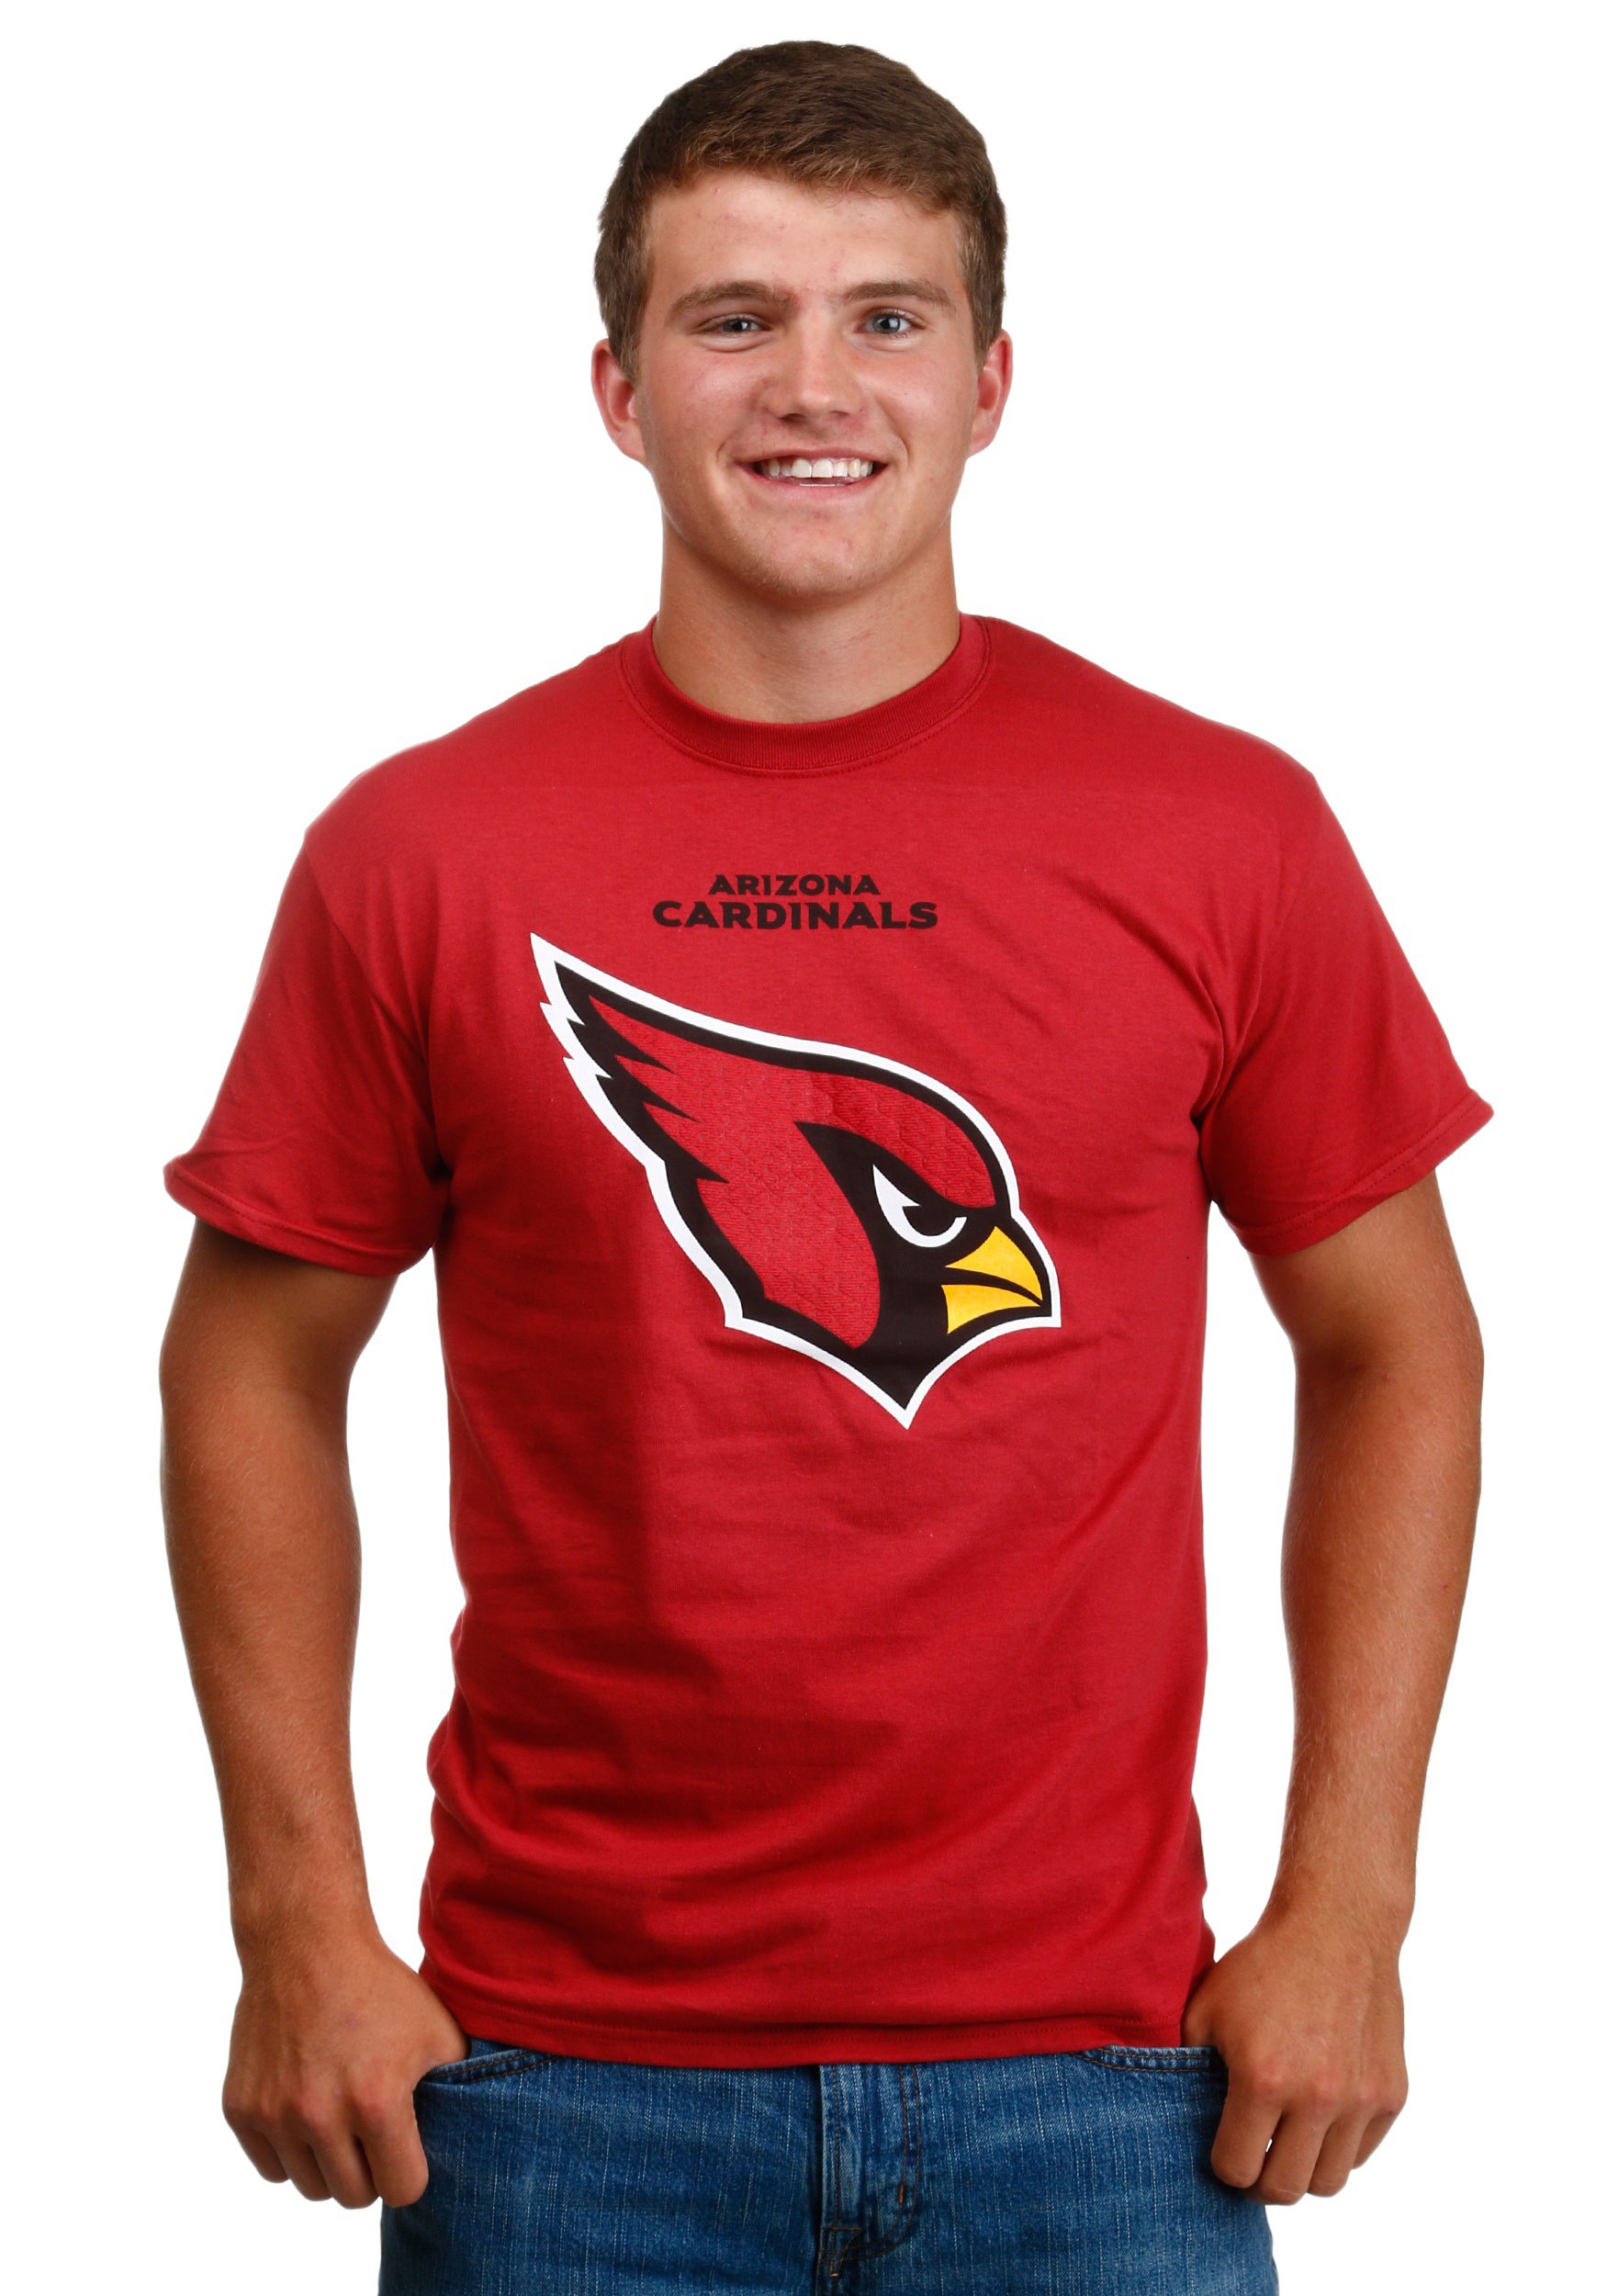 99.funny Arizona Cardinals Shirts Shop -   1695118345